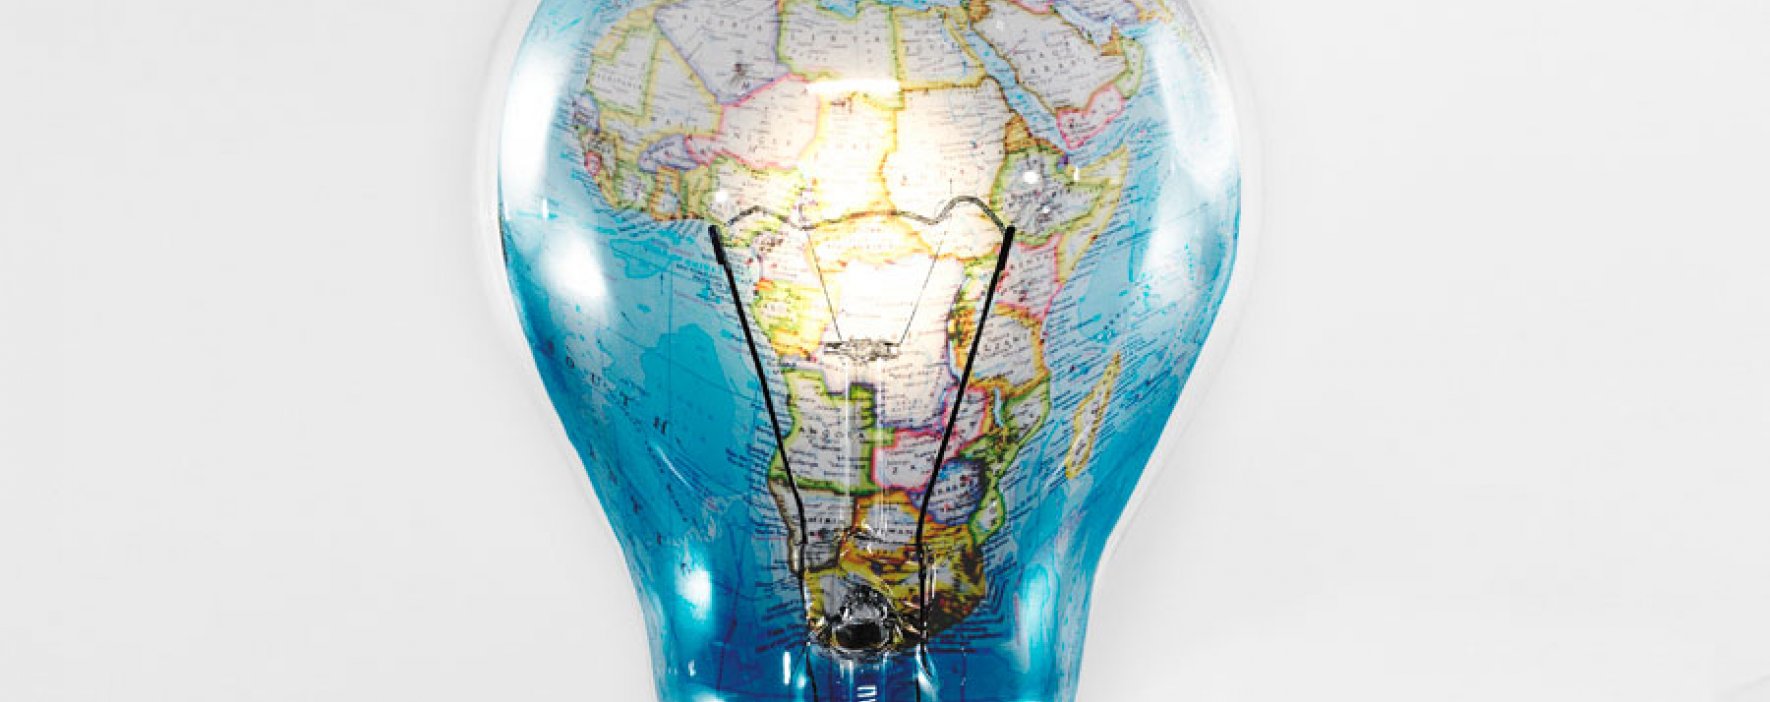 Fundación holandesa busca llevar energía a África